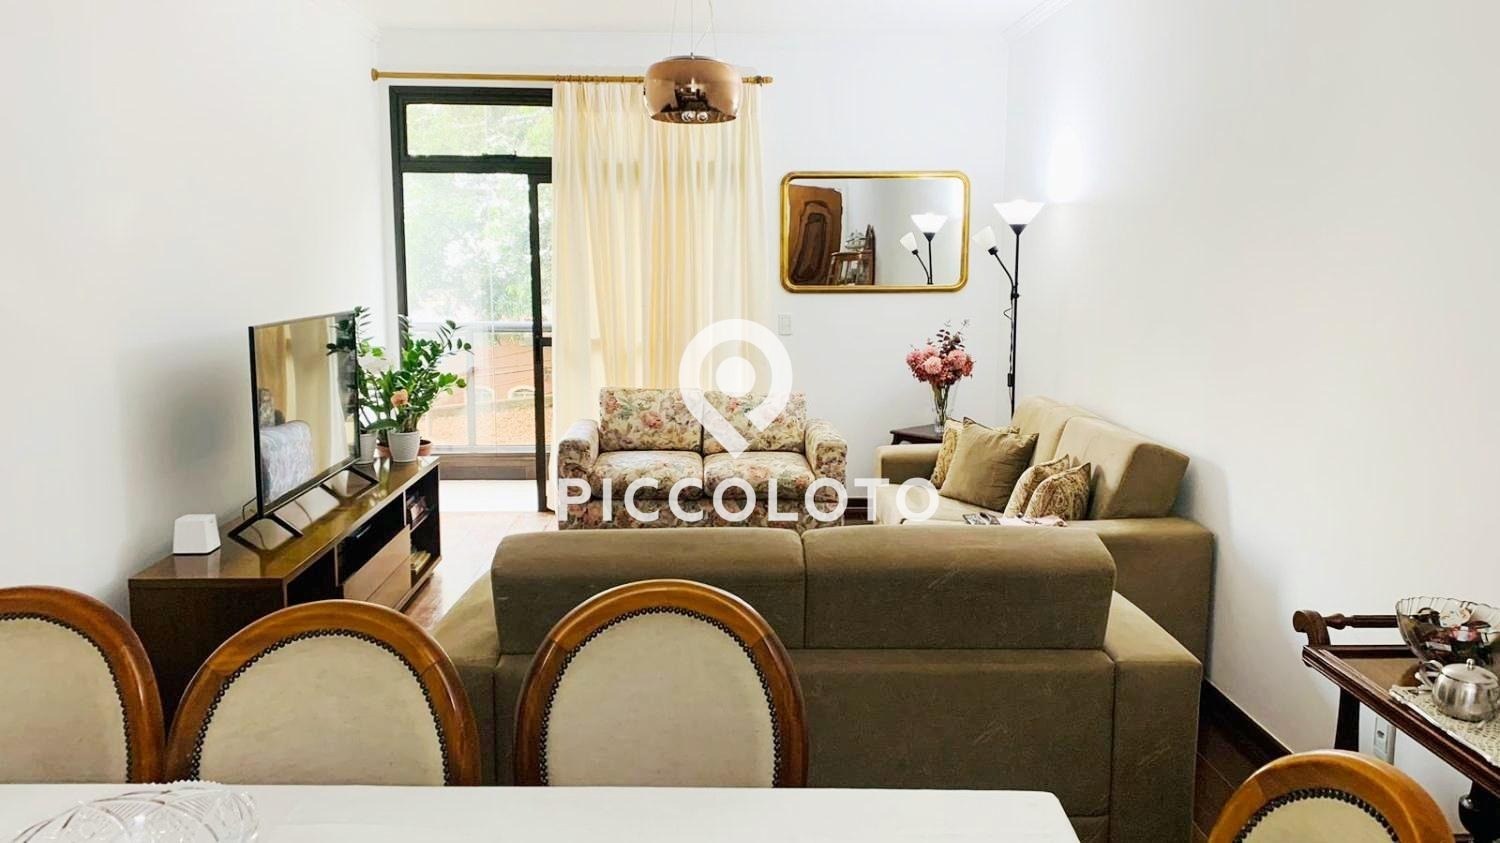 Piccoloto - Apartamento à venda no Vila Itapura em Campinas